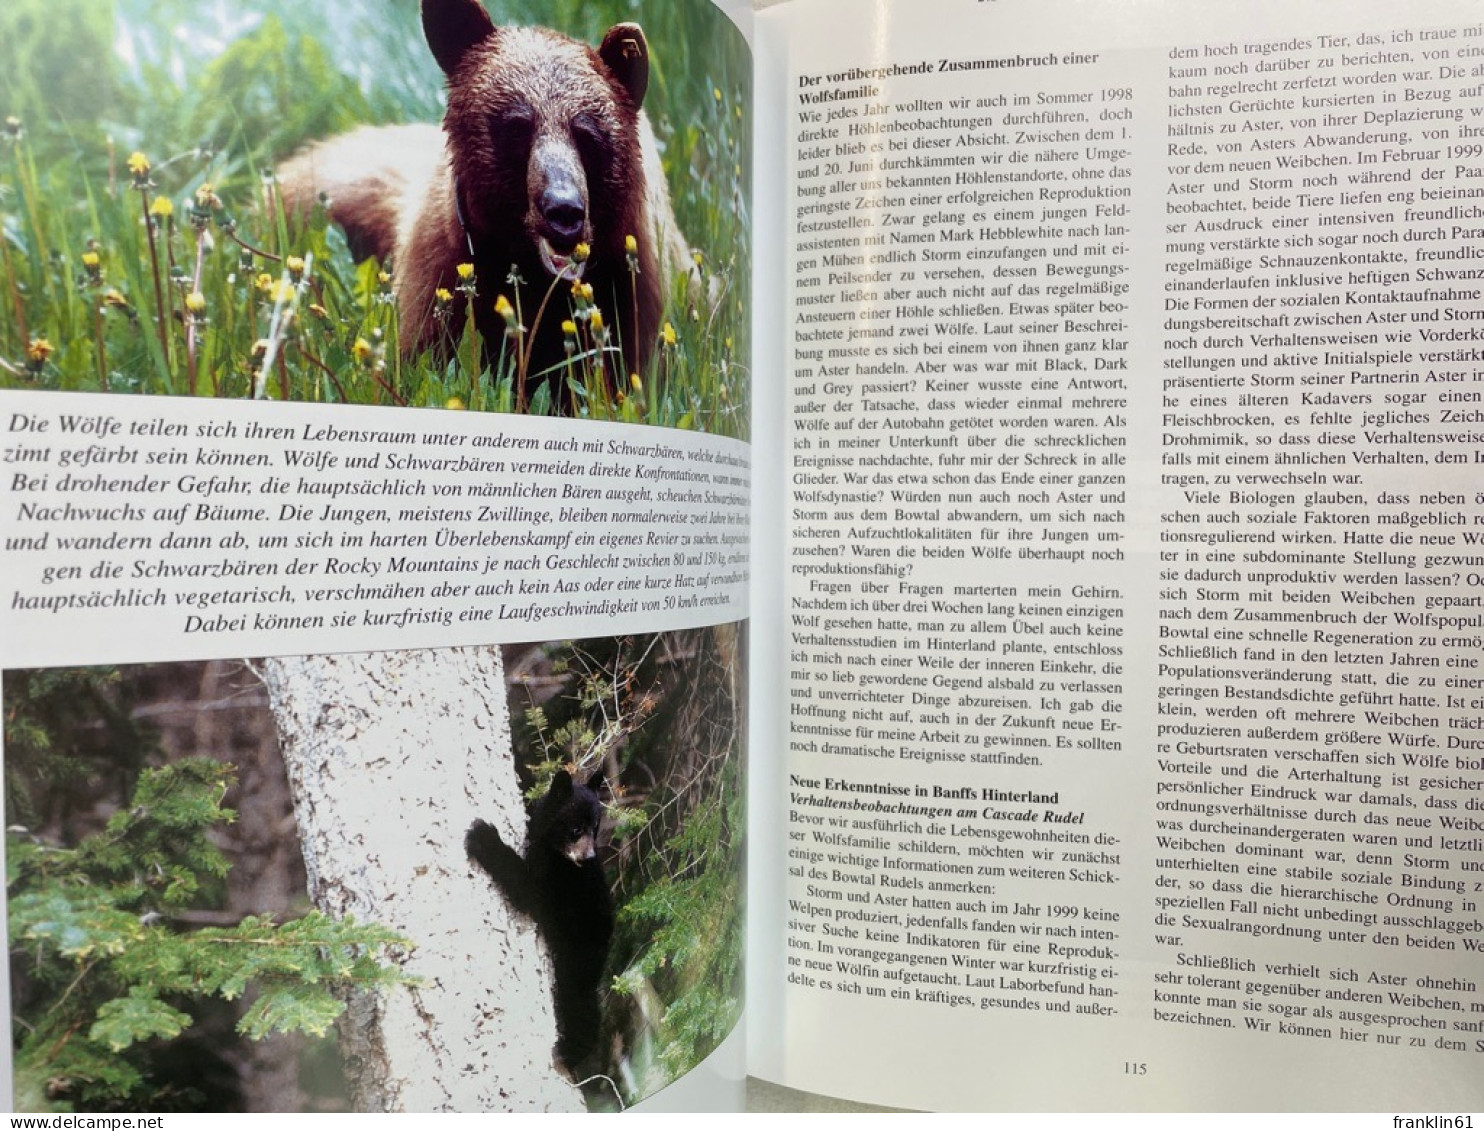 Timberwolf Yukon & Co : 11 Jahre Verhaltensbeobachtungen an Wölfen in freier Wildbahn.